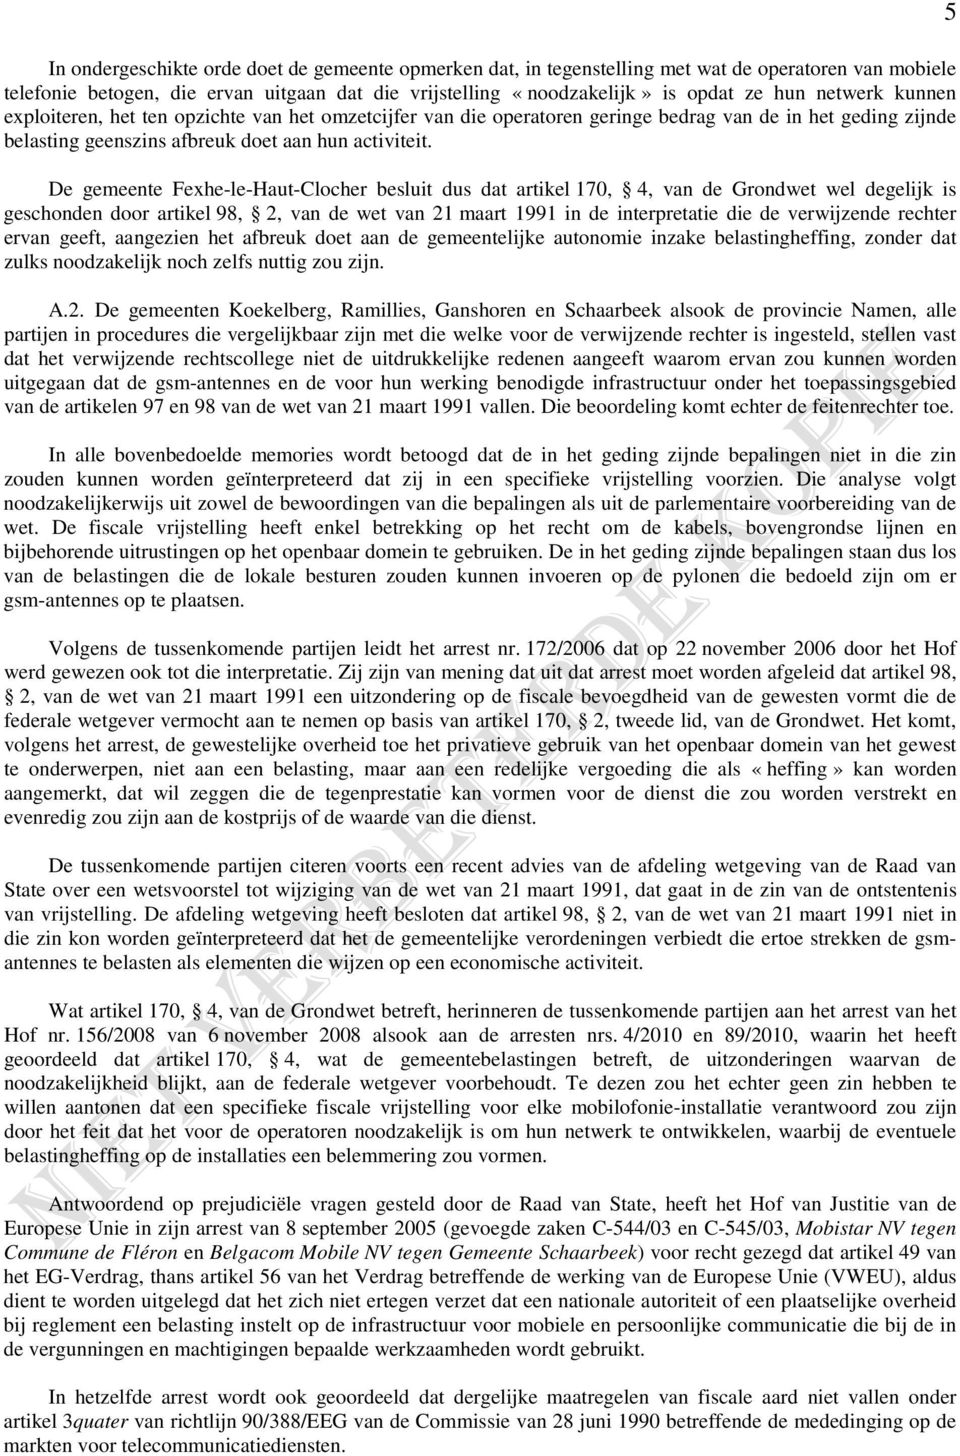 De gemeente Fexhe-le-Haut-Clocher besluit dus dat artikel 170, 4, van de Grondwet wel degelijk is geschonden door artikel 98, 2, van de wet van 21 maart 1991 in de interpretatie die de verwijzende